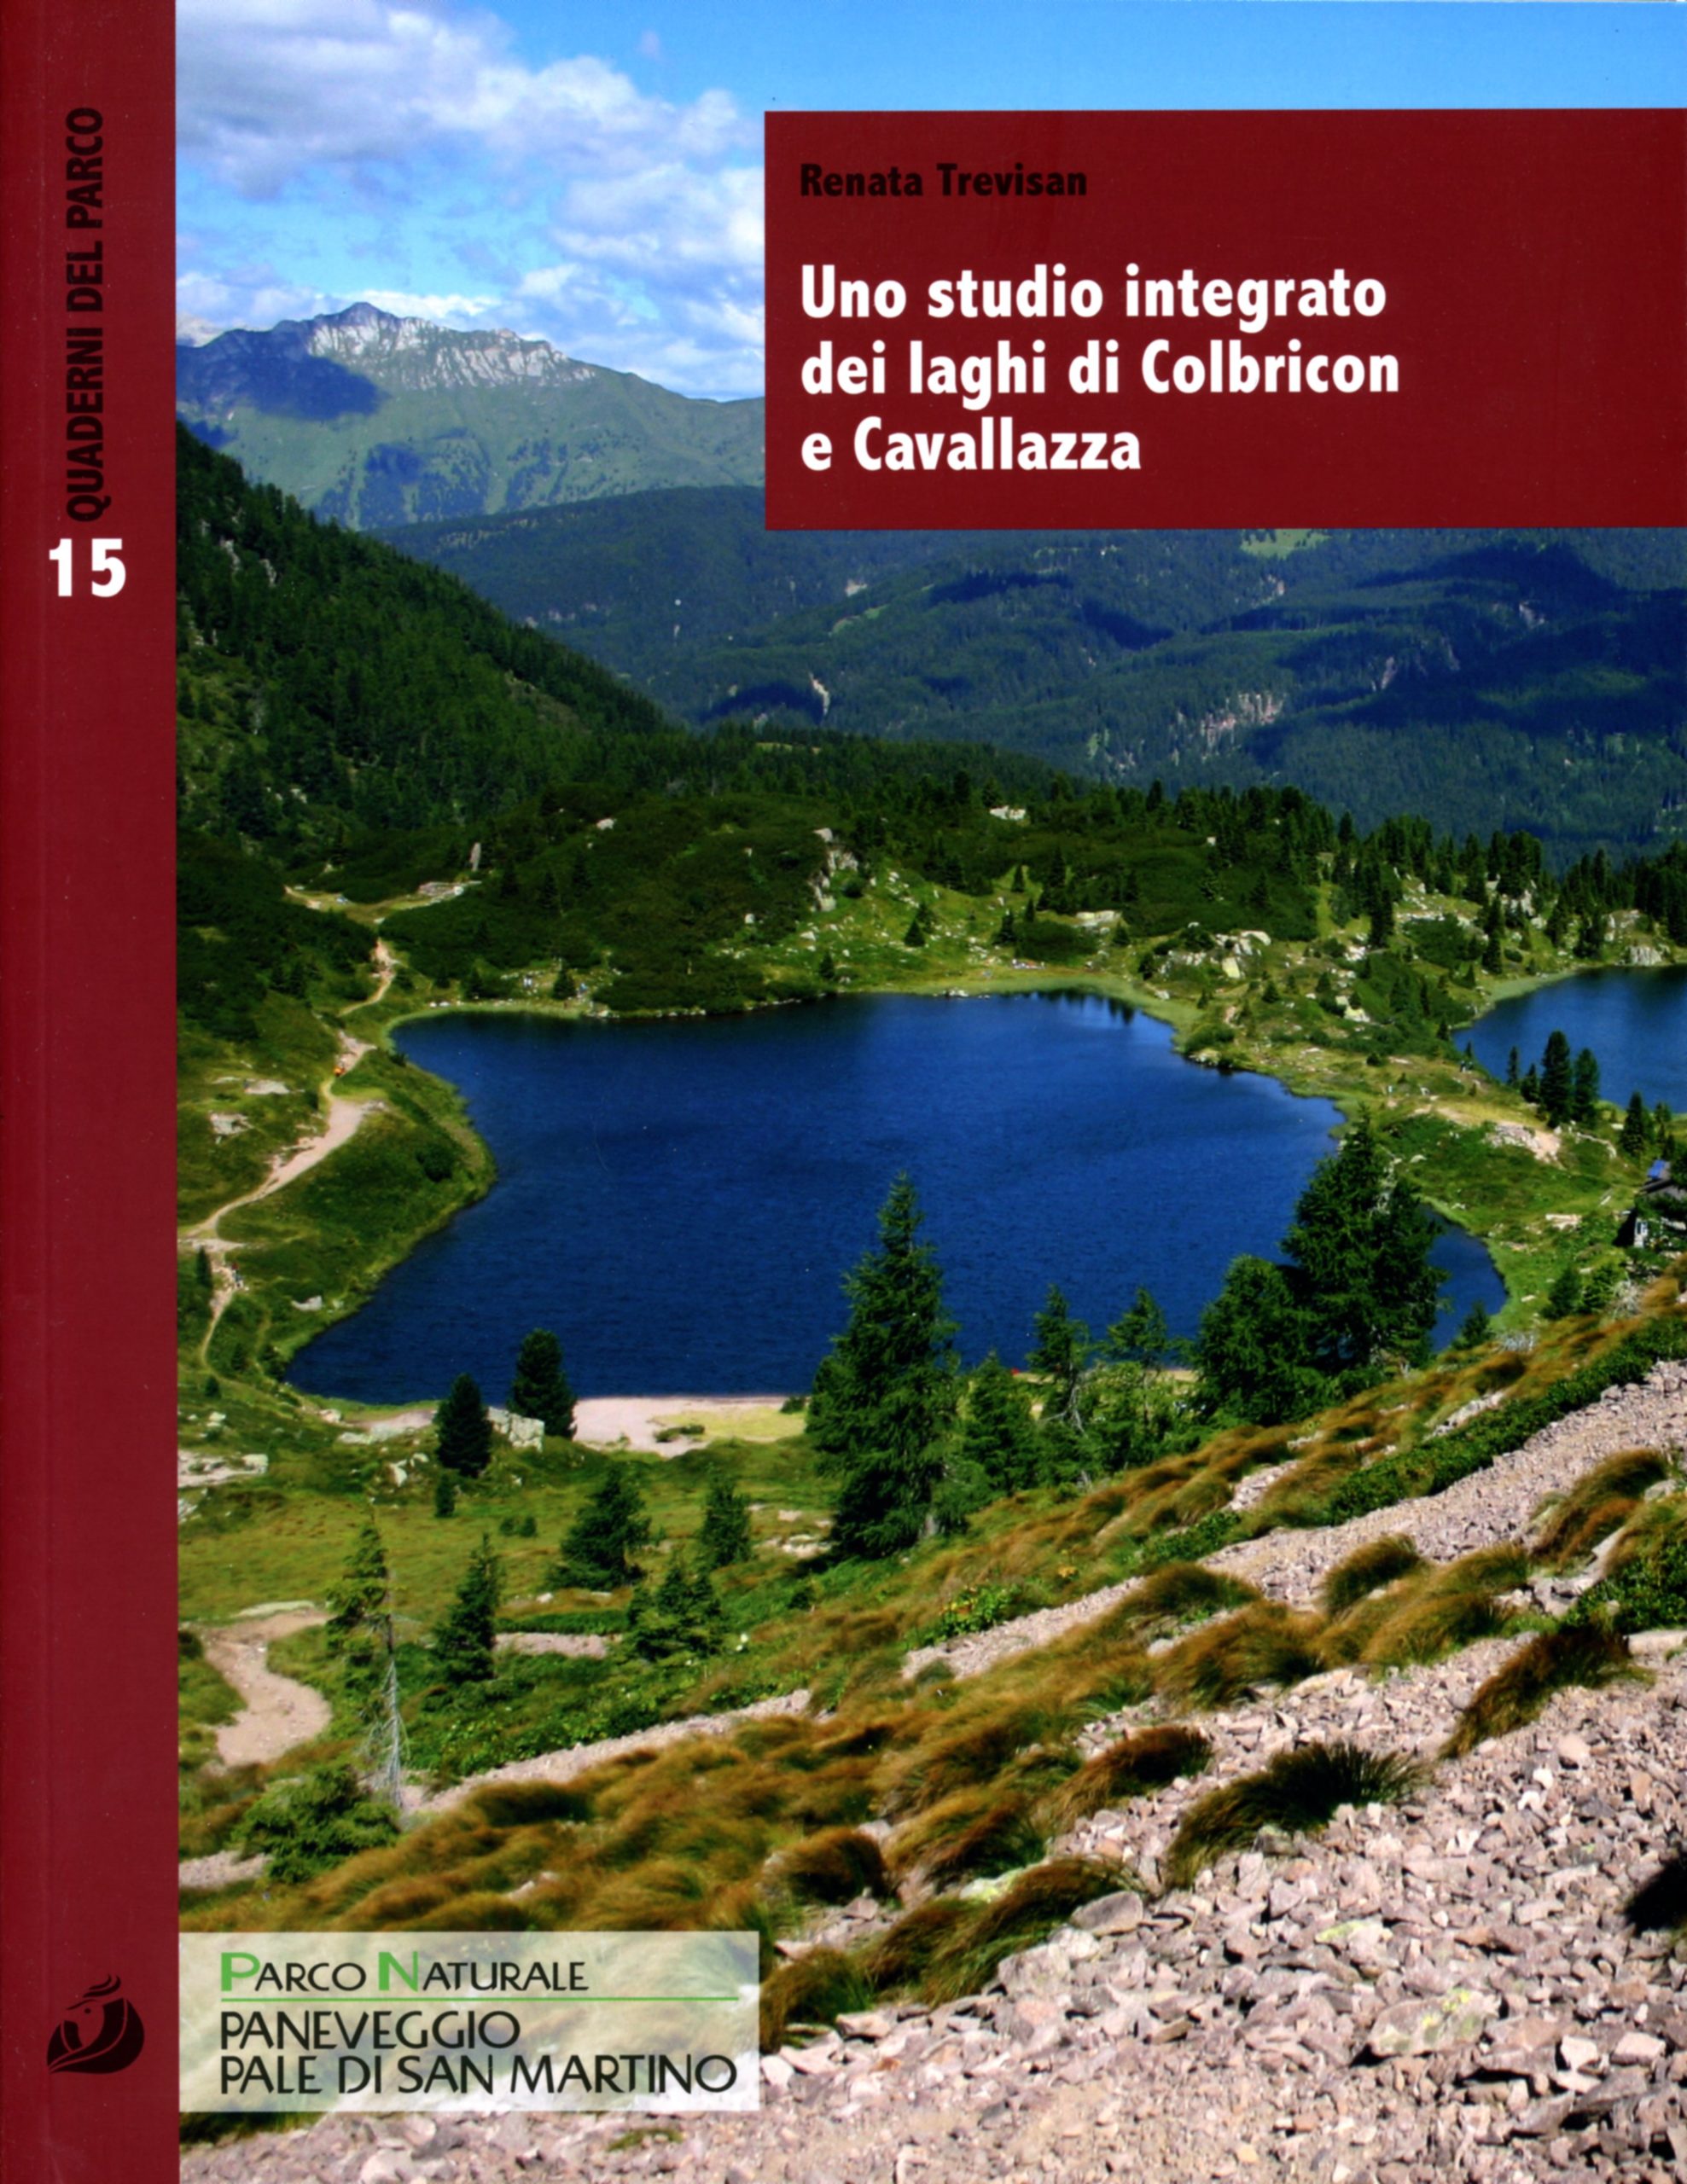 15. Uno studio integrato dei laghi di Colbricon e Cavallazza